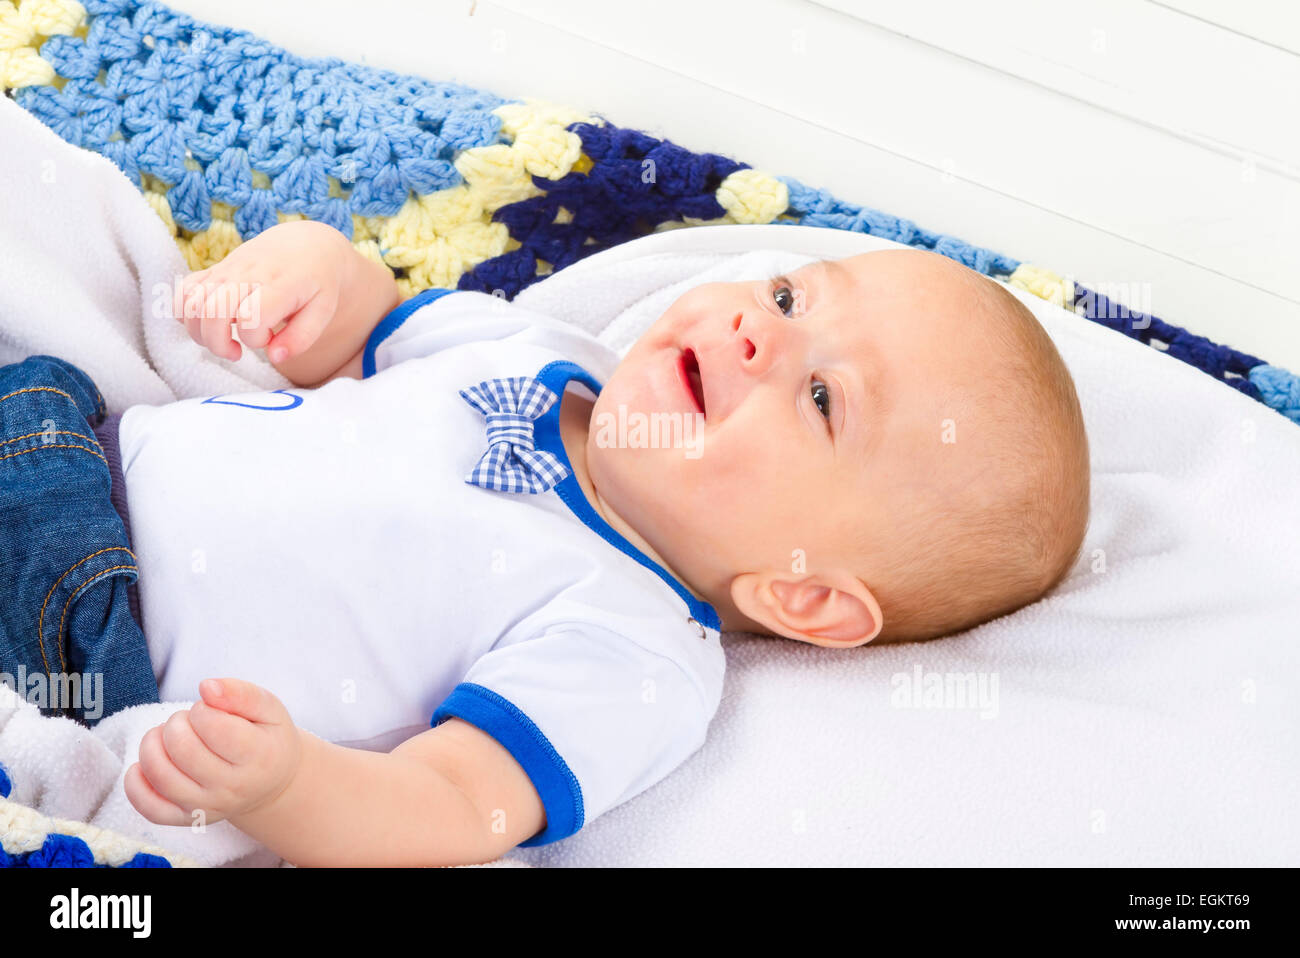 Cute baby boy laughing sur couverture blanche Banque D'Images